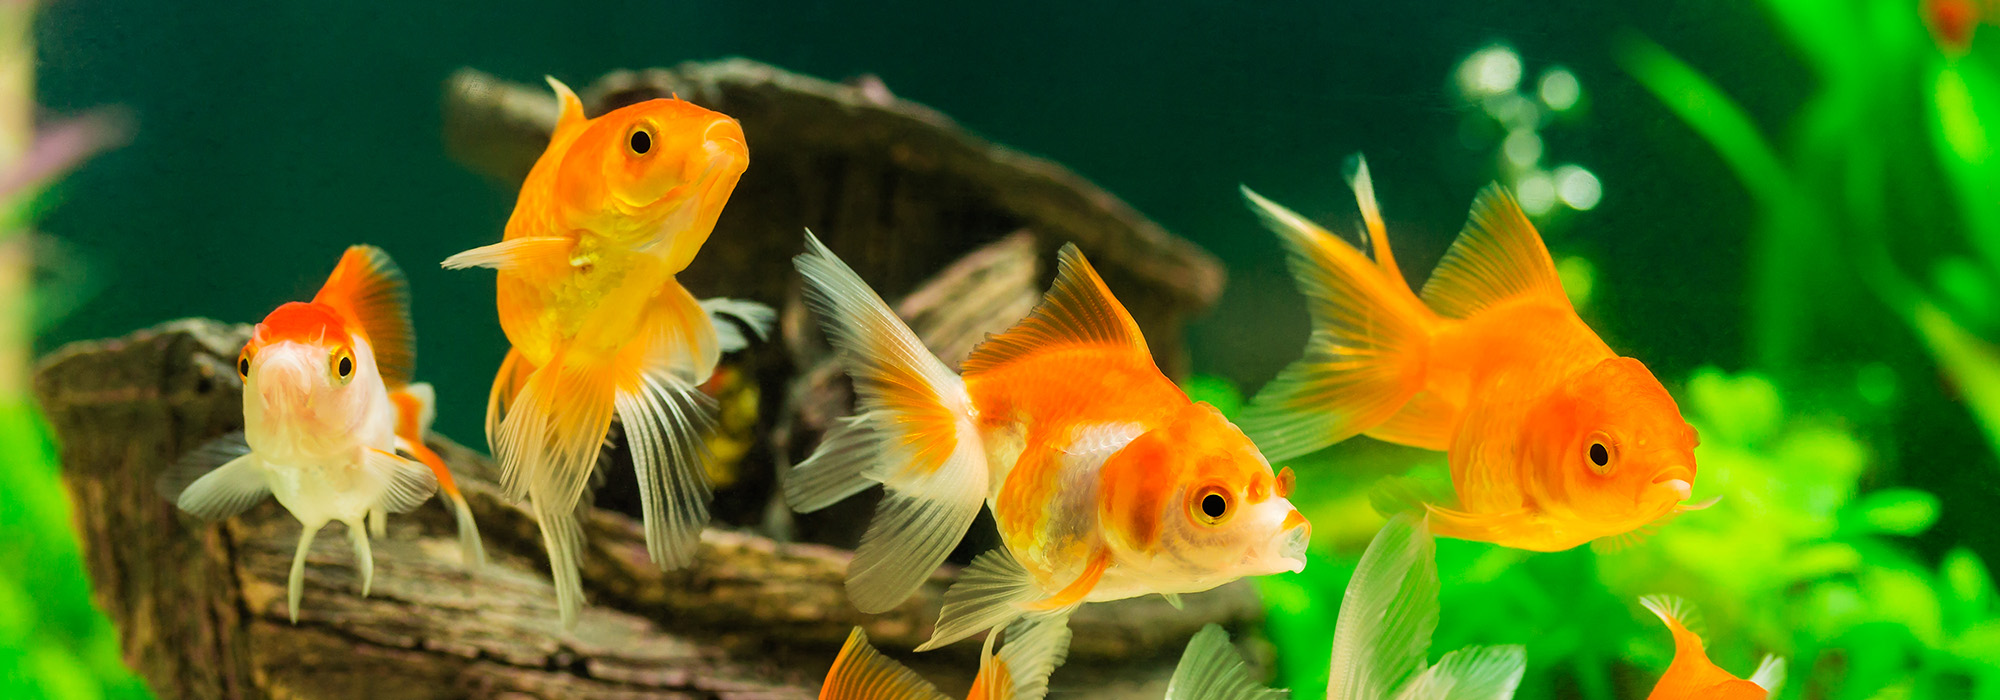 Goldfisch in einem Aquarium